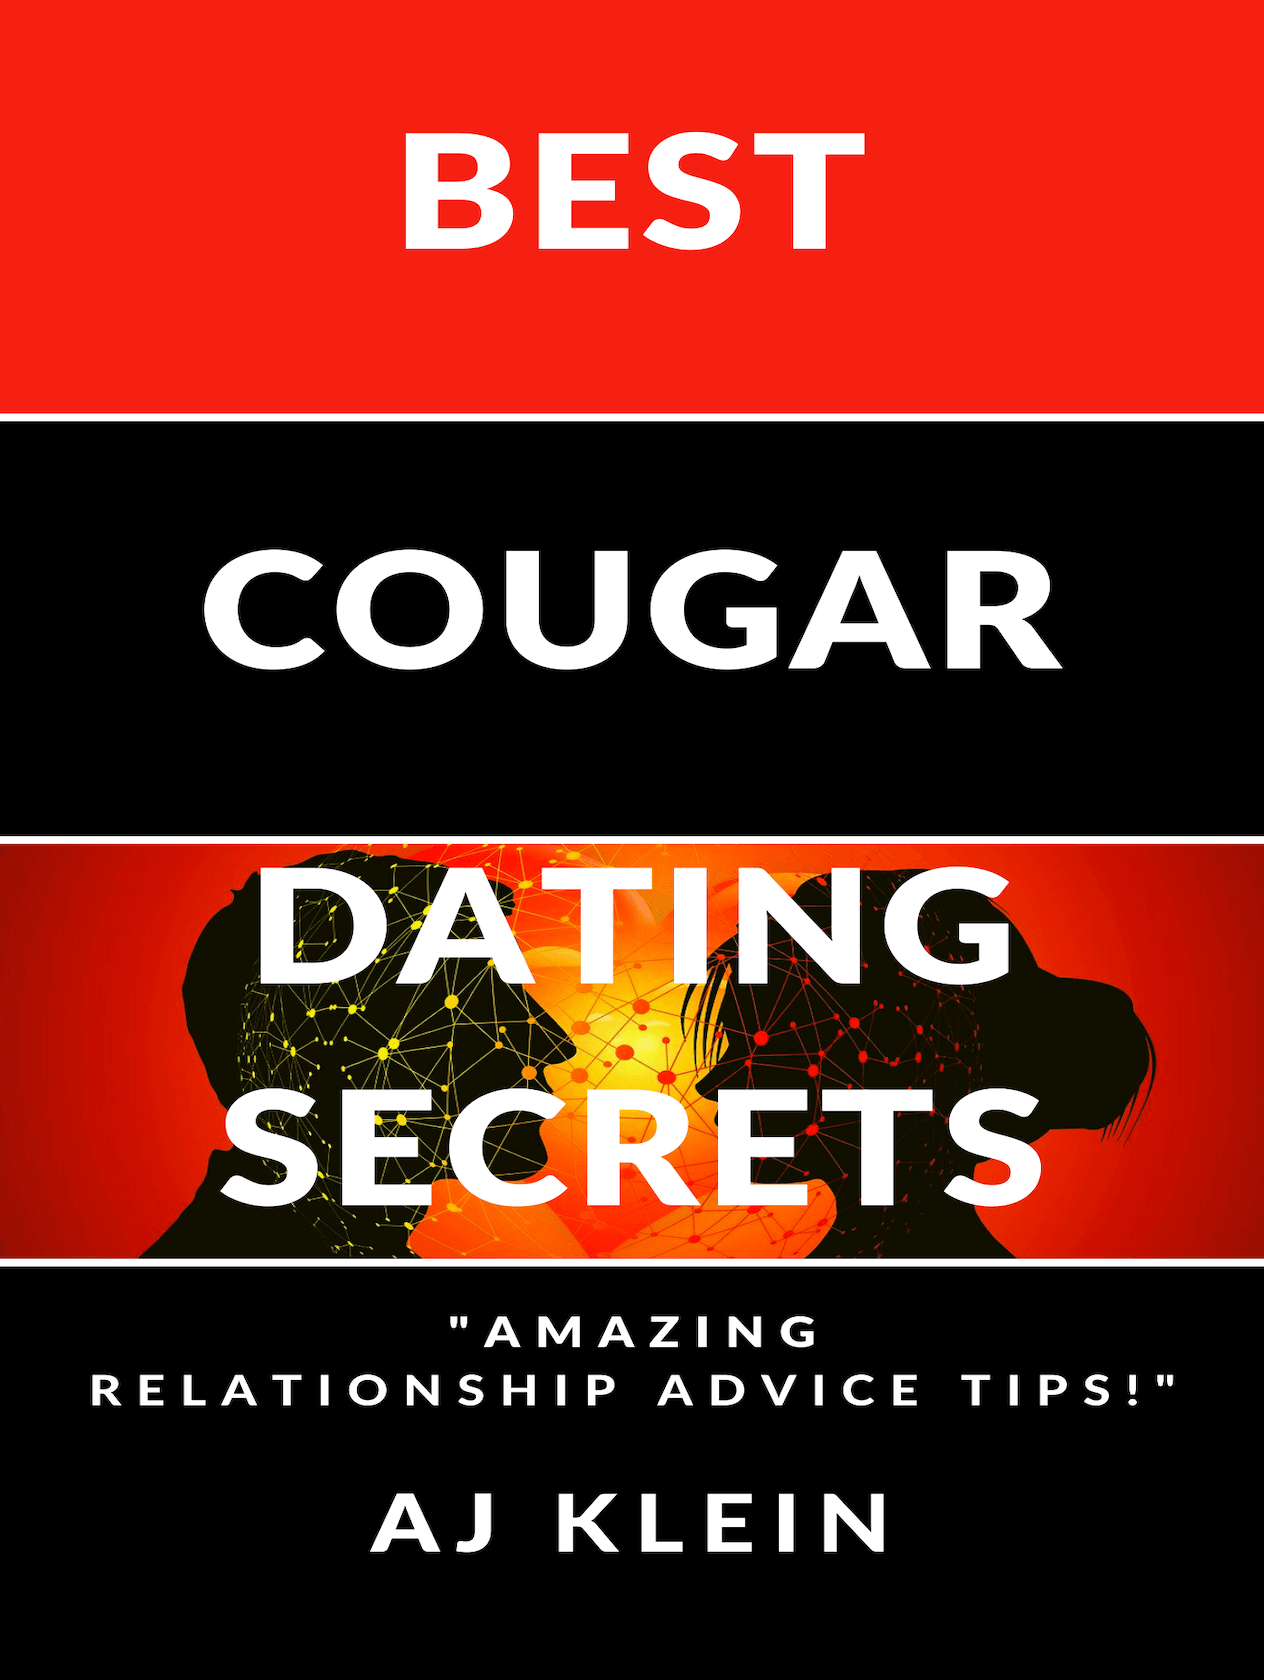 Best Cougar Dating Secrets